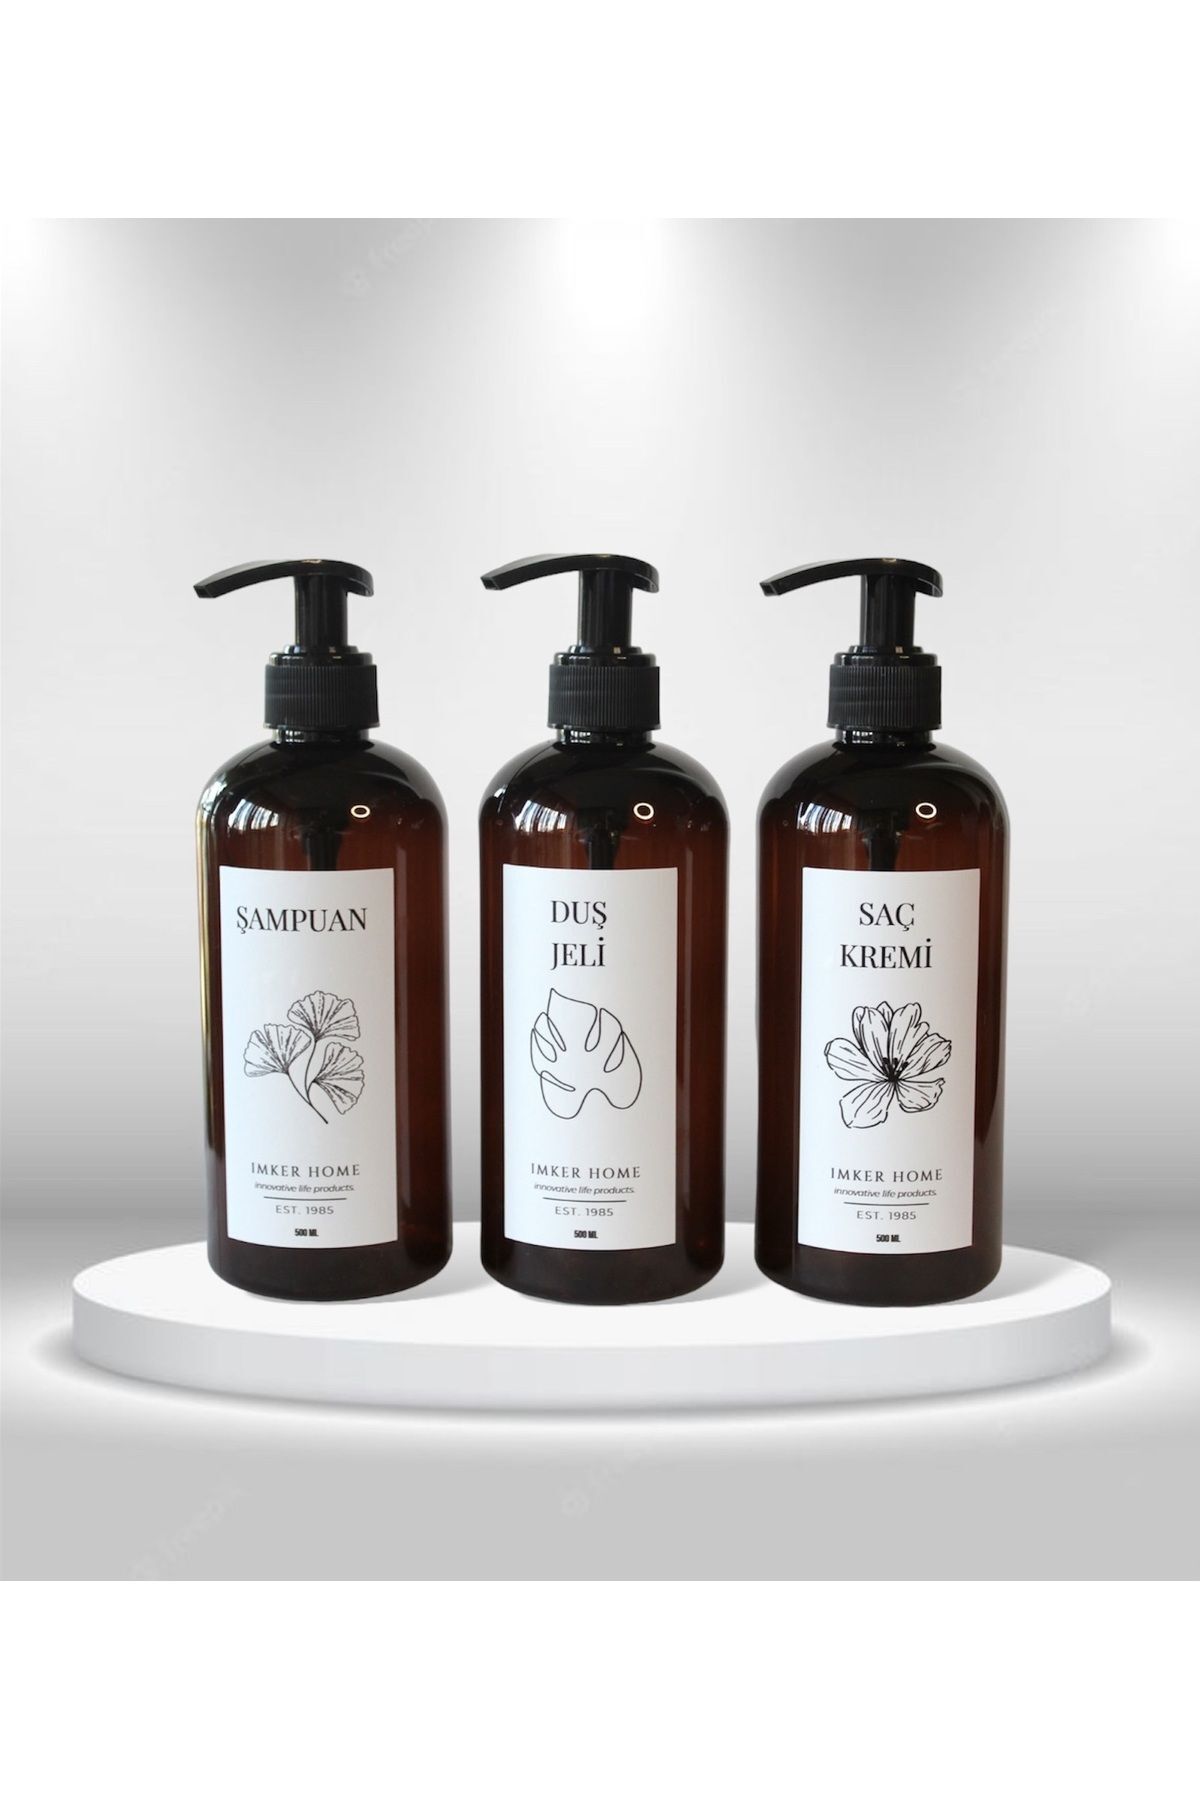 IMKER HOME Amber Kahverengi Pompalı Şampuanlık Duş Jeli Saç Kremi Şişesi 500Ml Banyo Mutfak Tezgah Düzenleyici